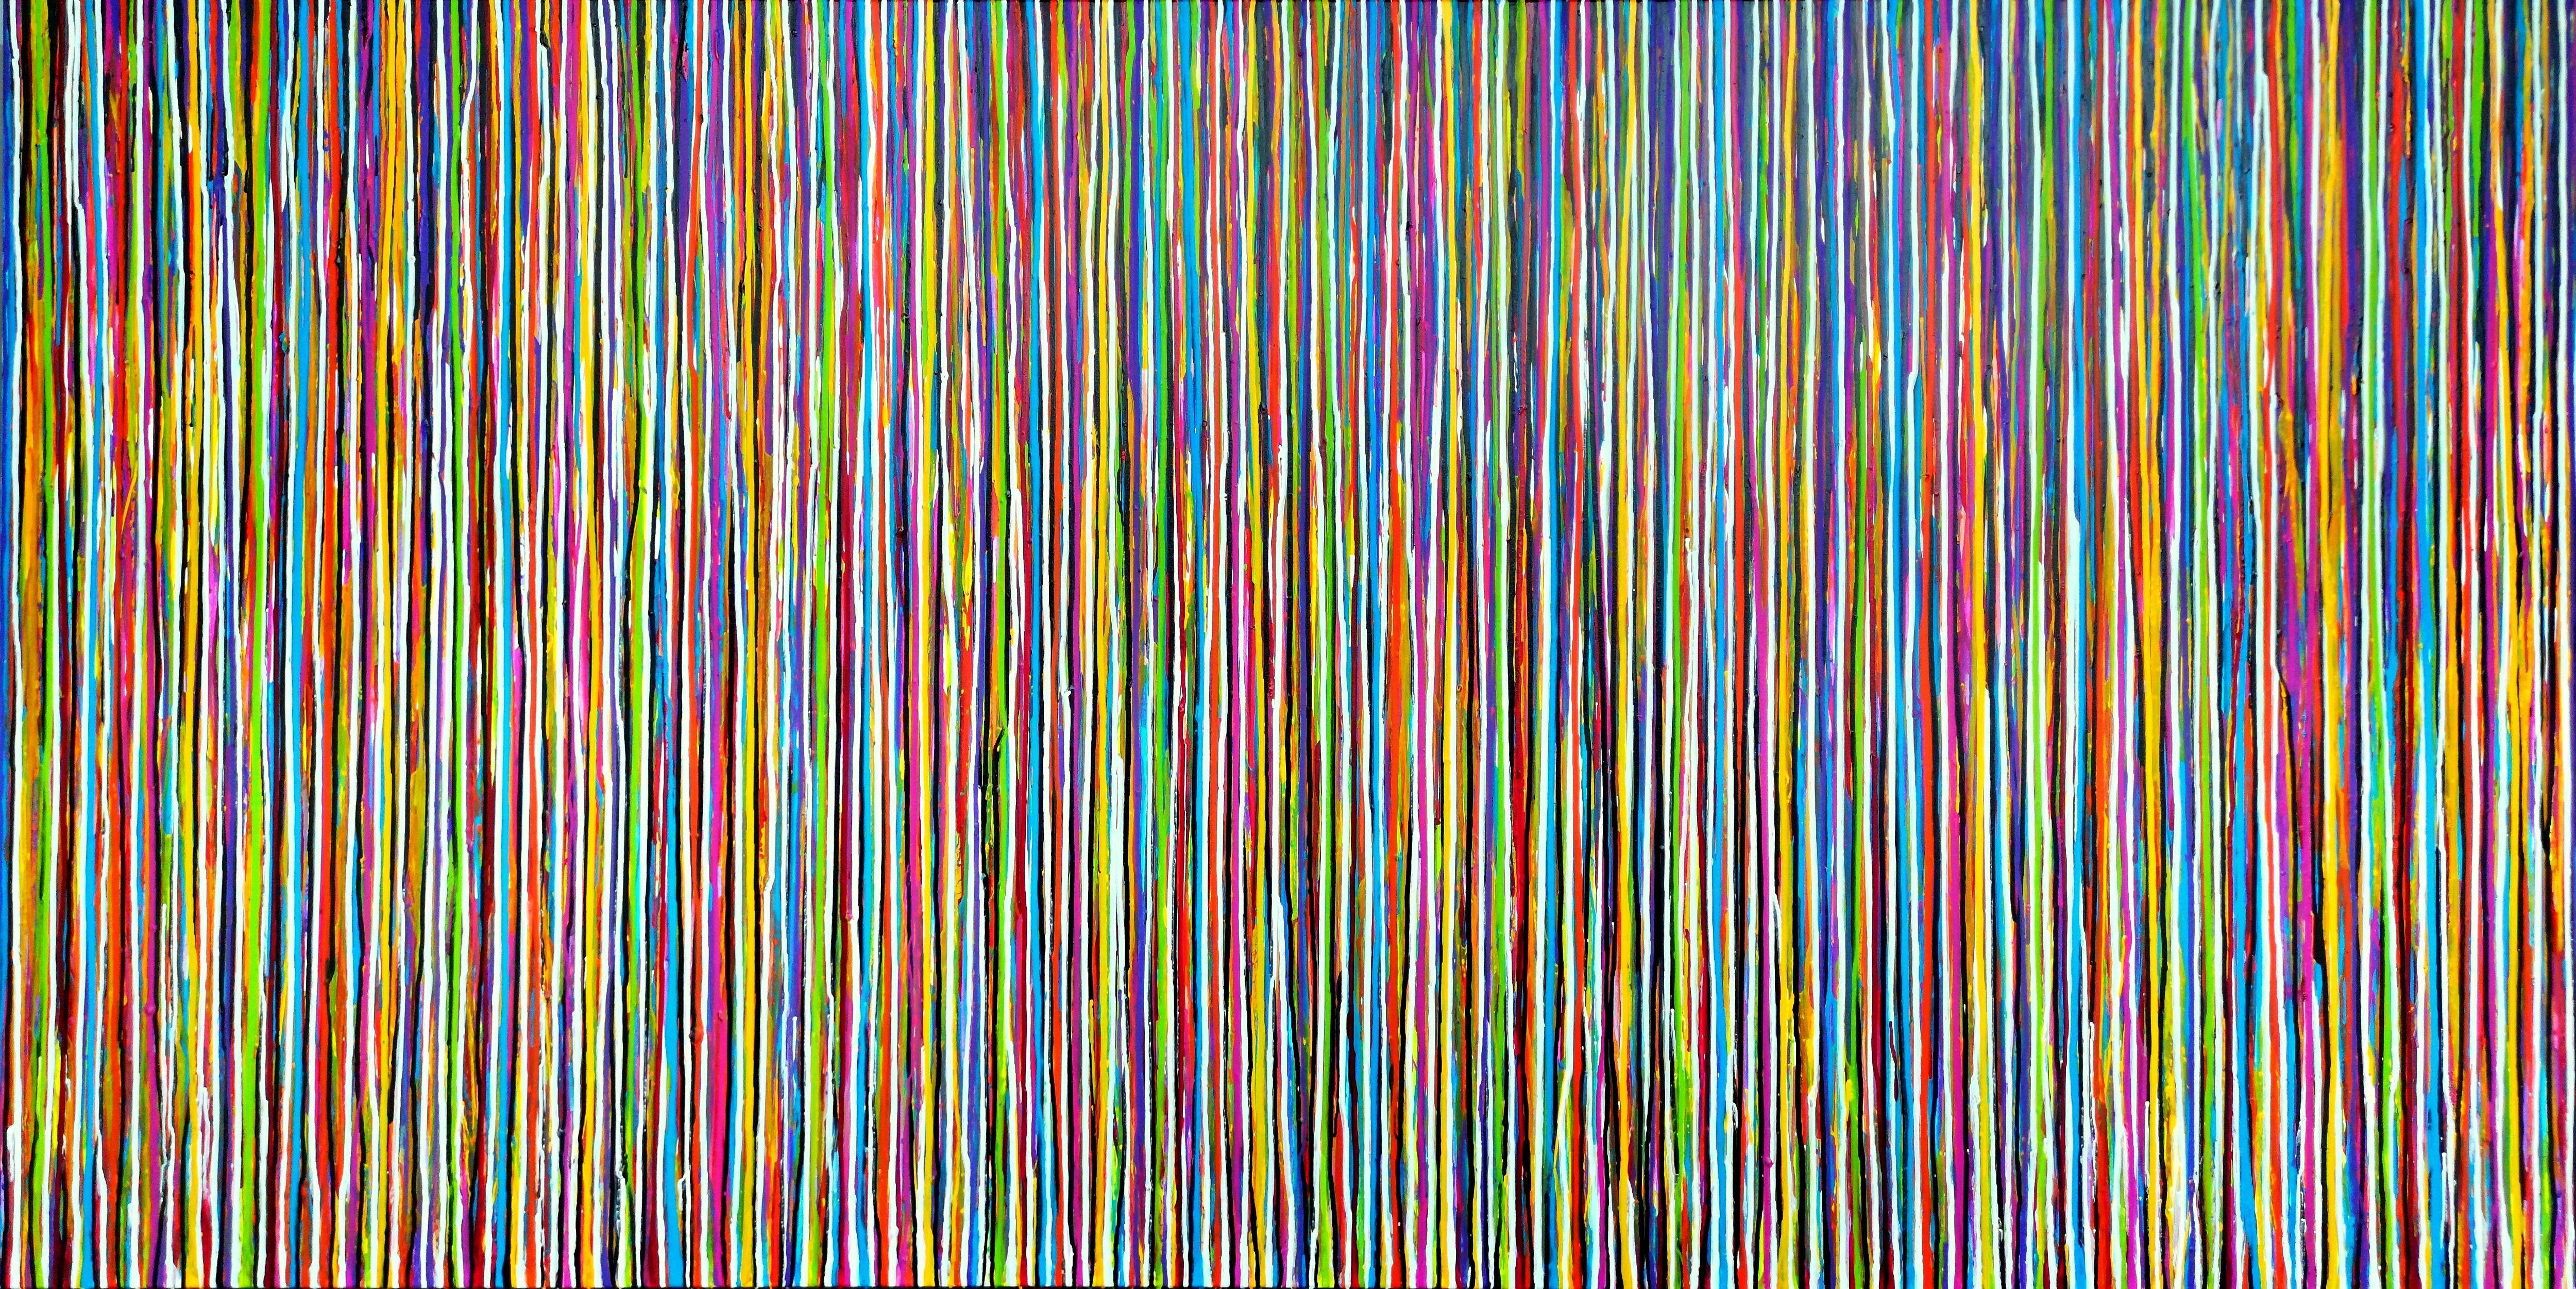 Abstract Painting Carla Sá Fernandes - La création émotionnelle n° 276, peinture, acrylique sur toile